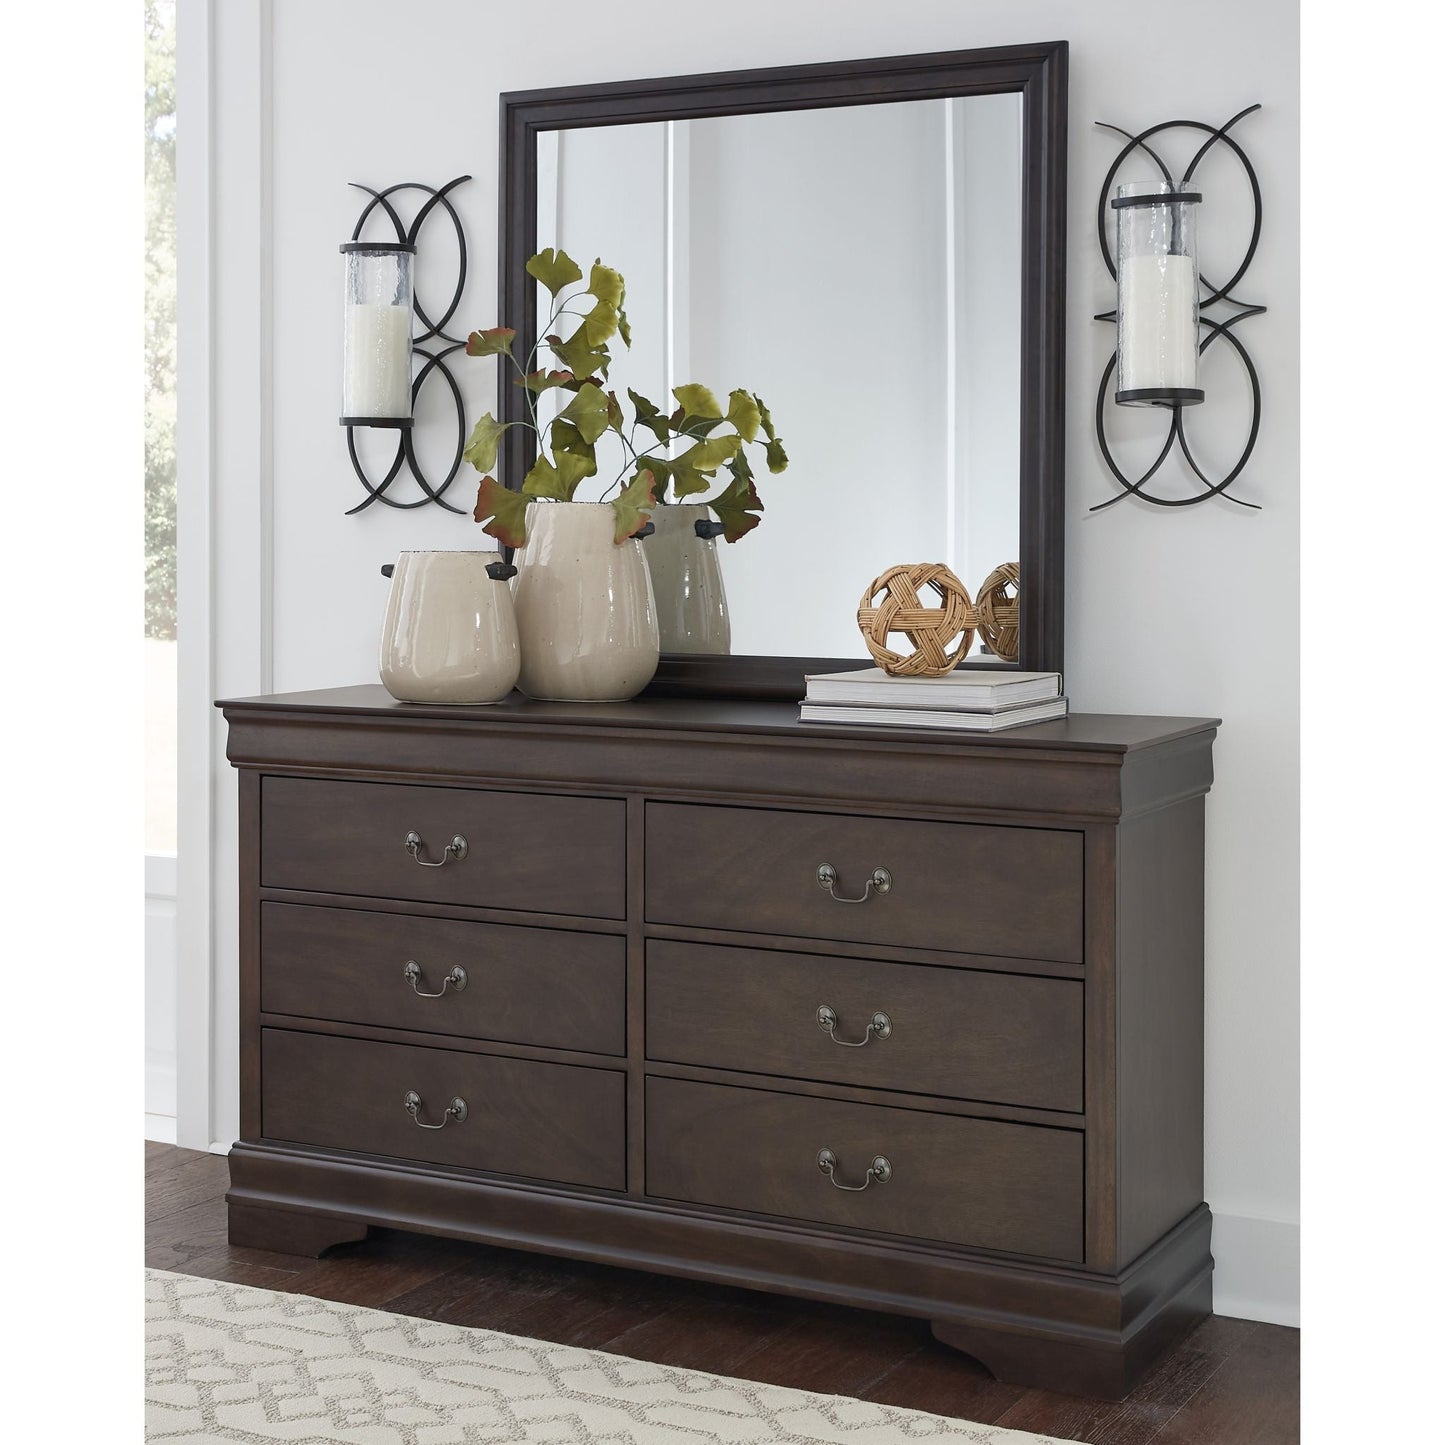 Leewarden Dresser and Mirror - Dark Brown